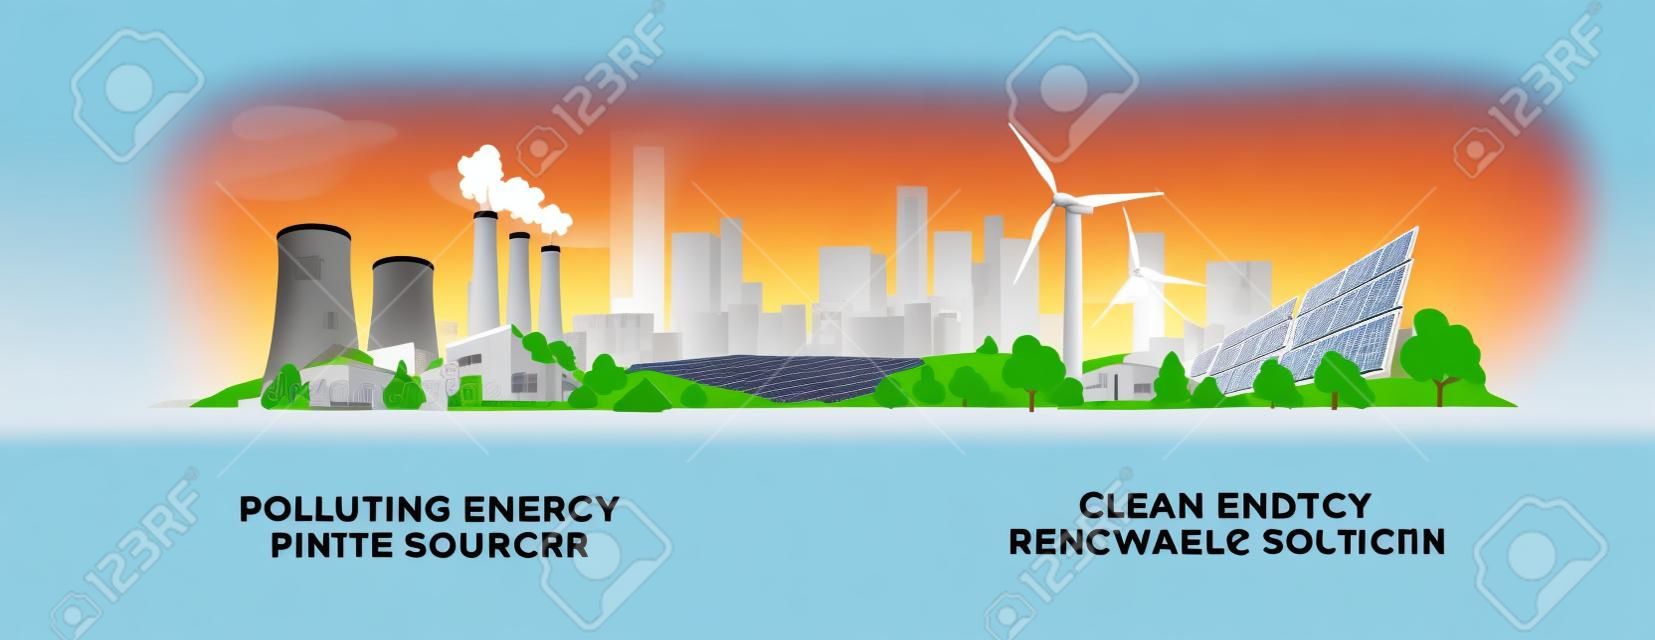 Vector illustratie toont schone en vervuilende elektriciteitsproductie. Vervuilen van fossiele thermische kolen en kerncentrales versus schone zonnepanelen en windturbines hernieuwbare energie.